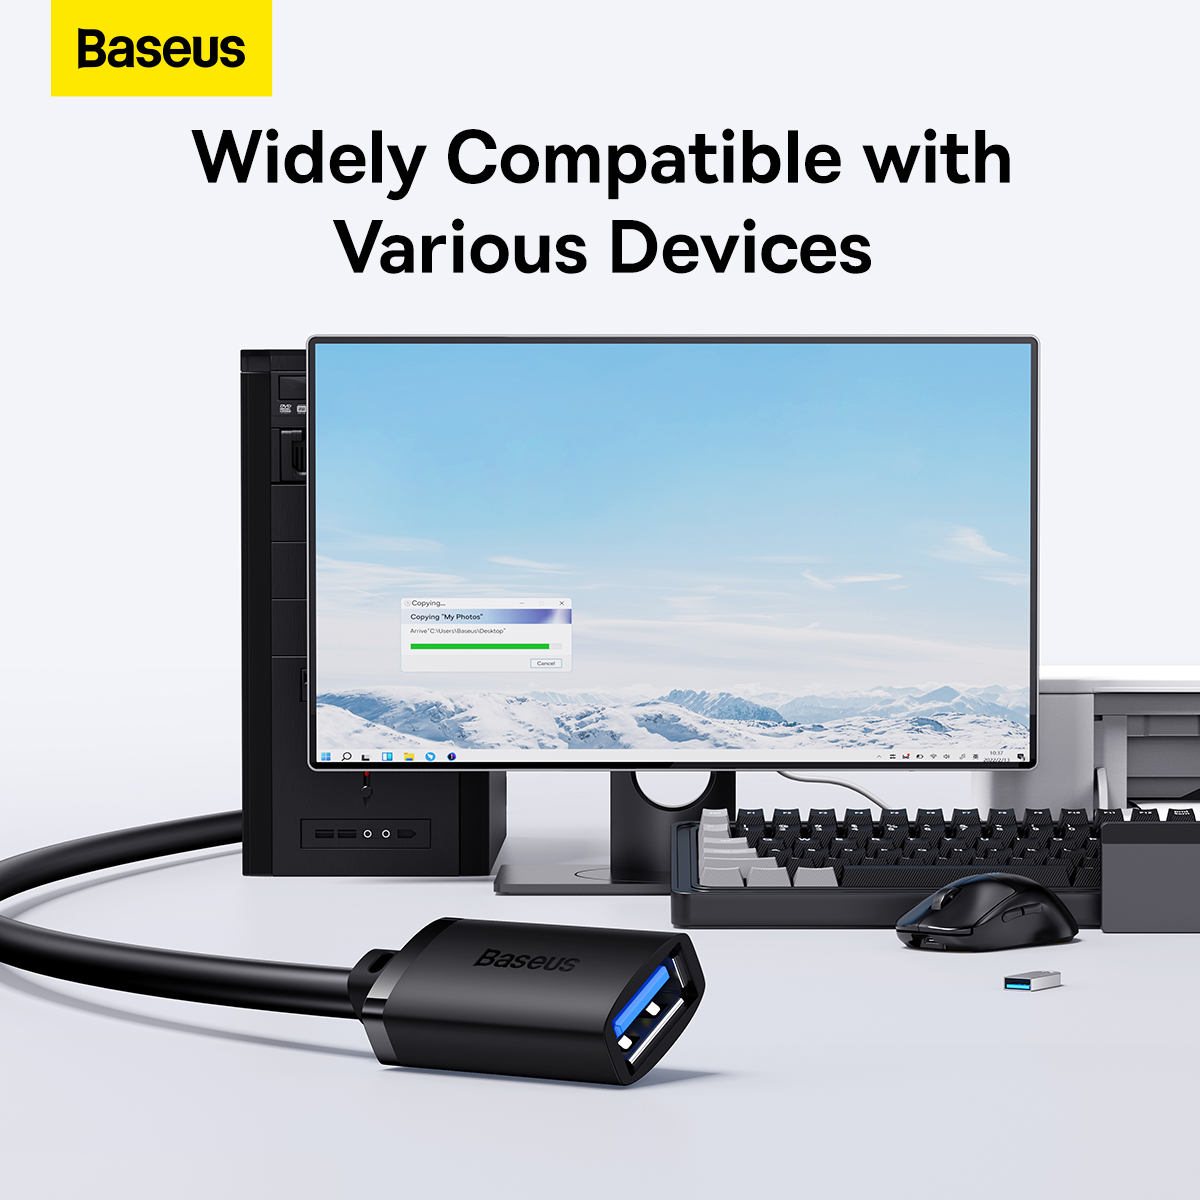 Cáp Nối Dài USB Tiện Lợi Baseus AirJoy Series USB3.0 Extension Cable (Hàng chính hãng)